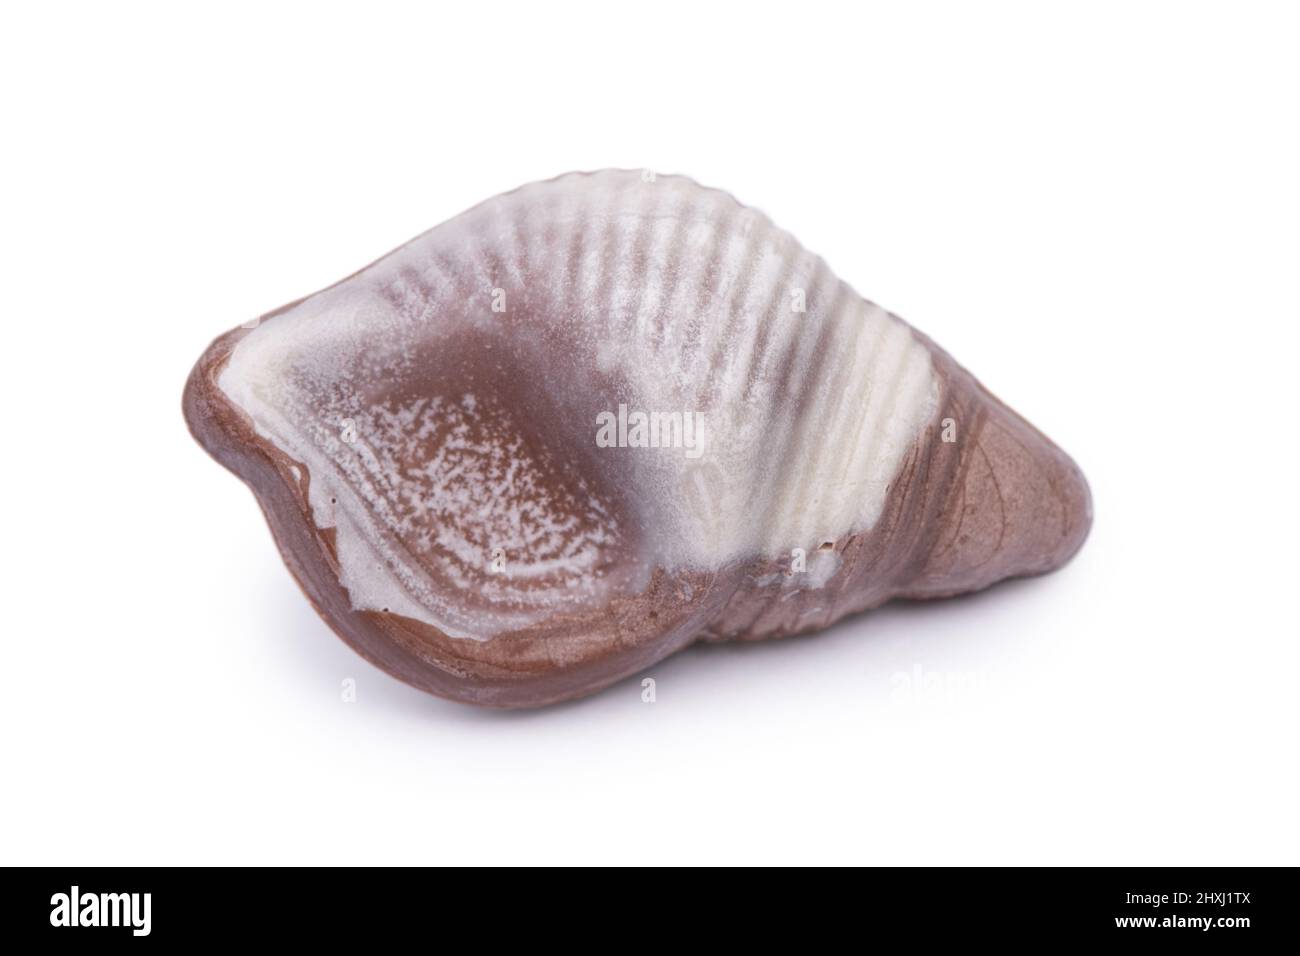 One seashell chocolate bar isolated on white background Stock Photo